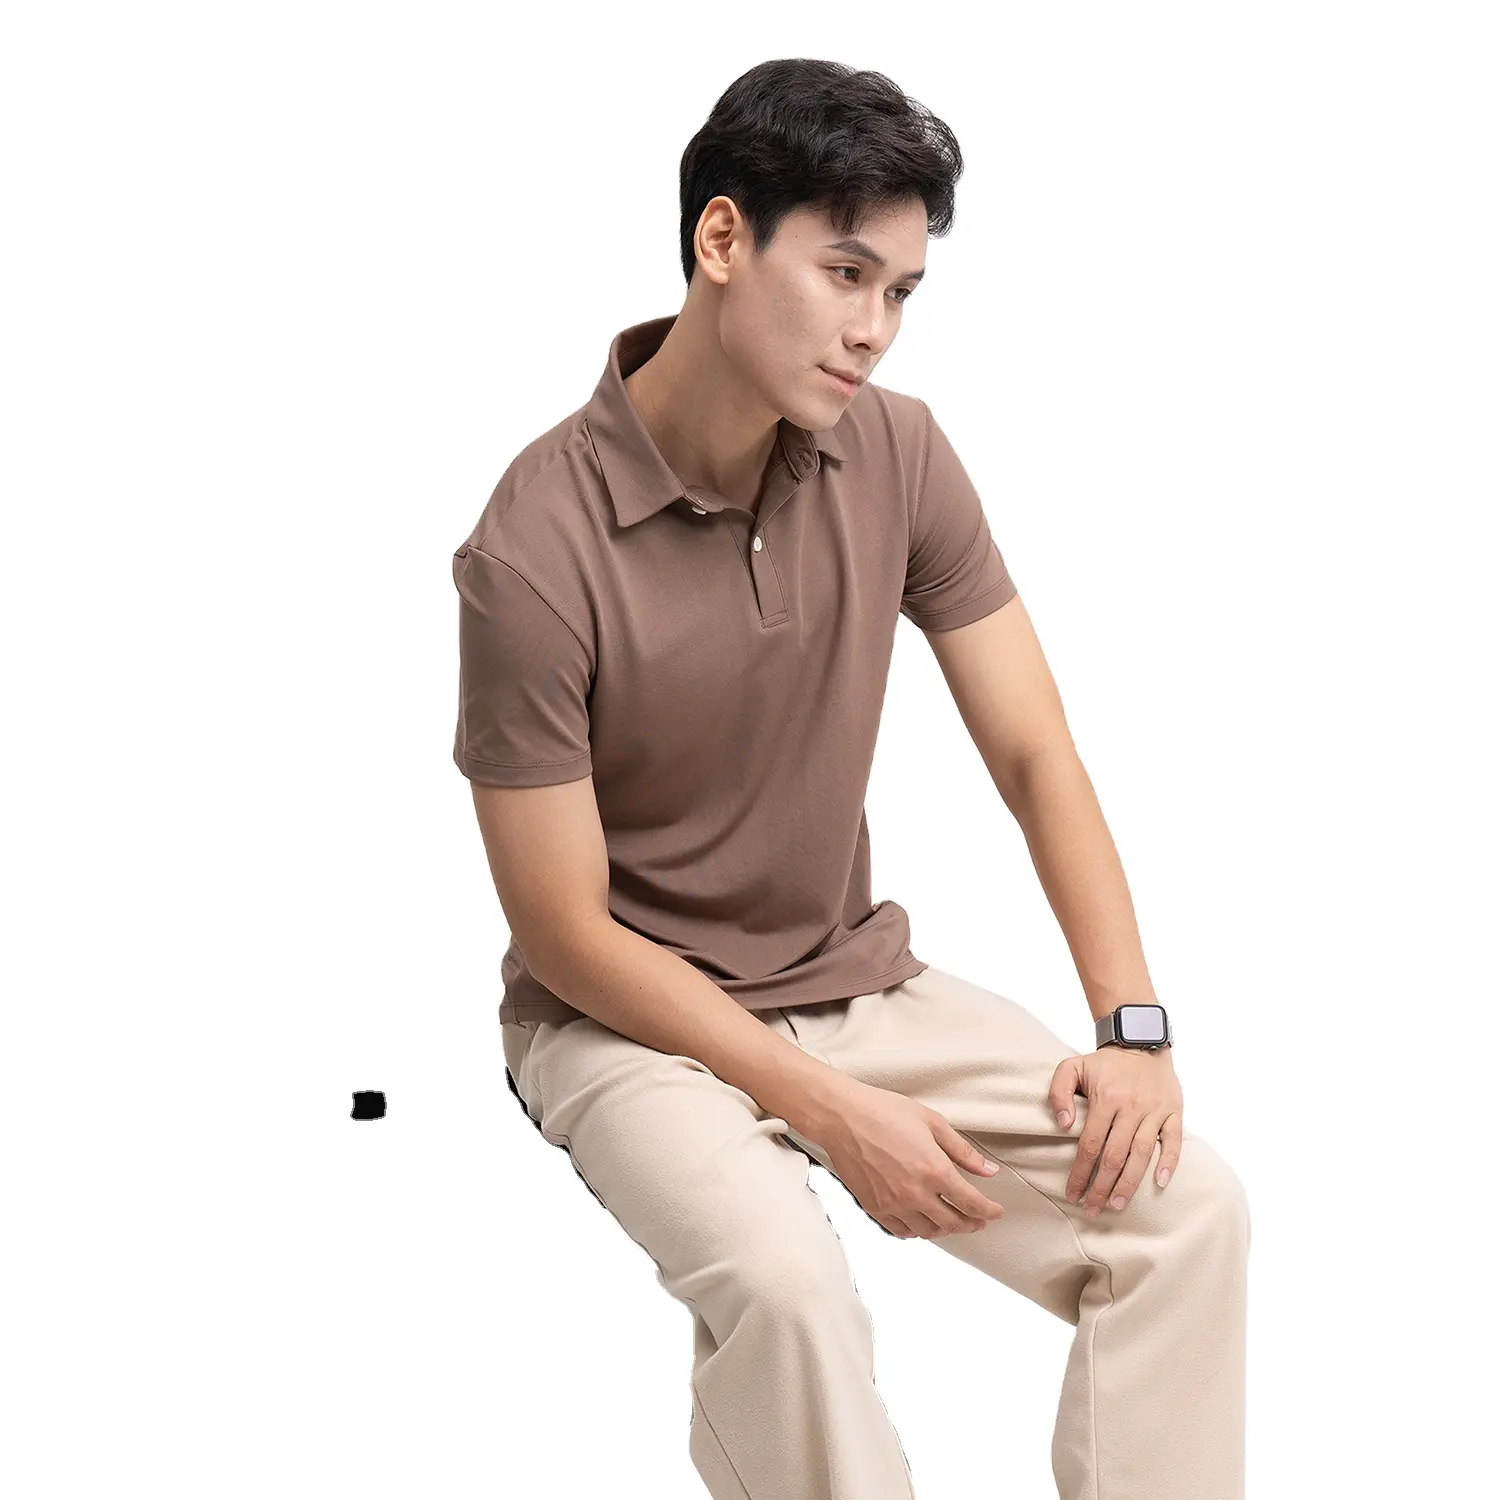 Оптовая продажа, новая мужская цветная 100% хлопковая футболка с длинным рукавом OEM, кардиган с коротким рукавом, мужская рубашка, сделанная во Вьетнаме